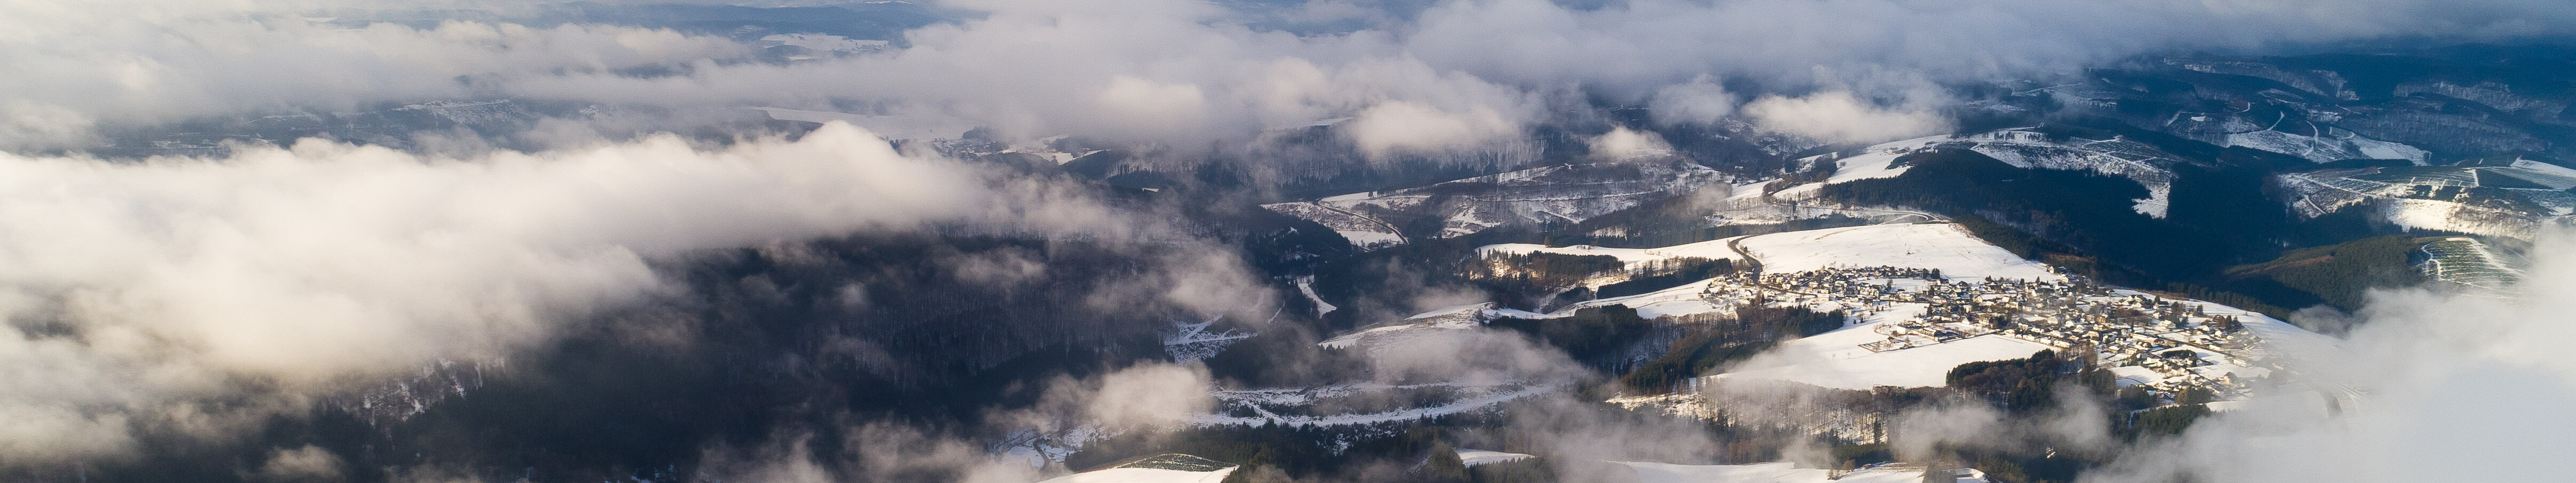 Wolken ziehen über die schneebedeckten Berge am Kahlen Asten bei Winterberg im Sauerland. © Tourismus NRW e.V.